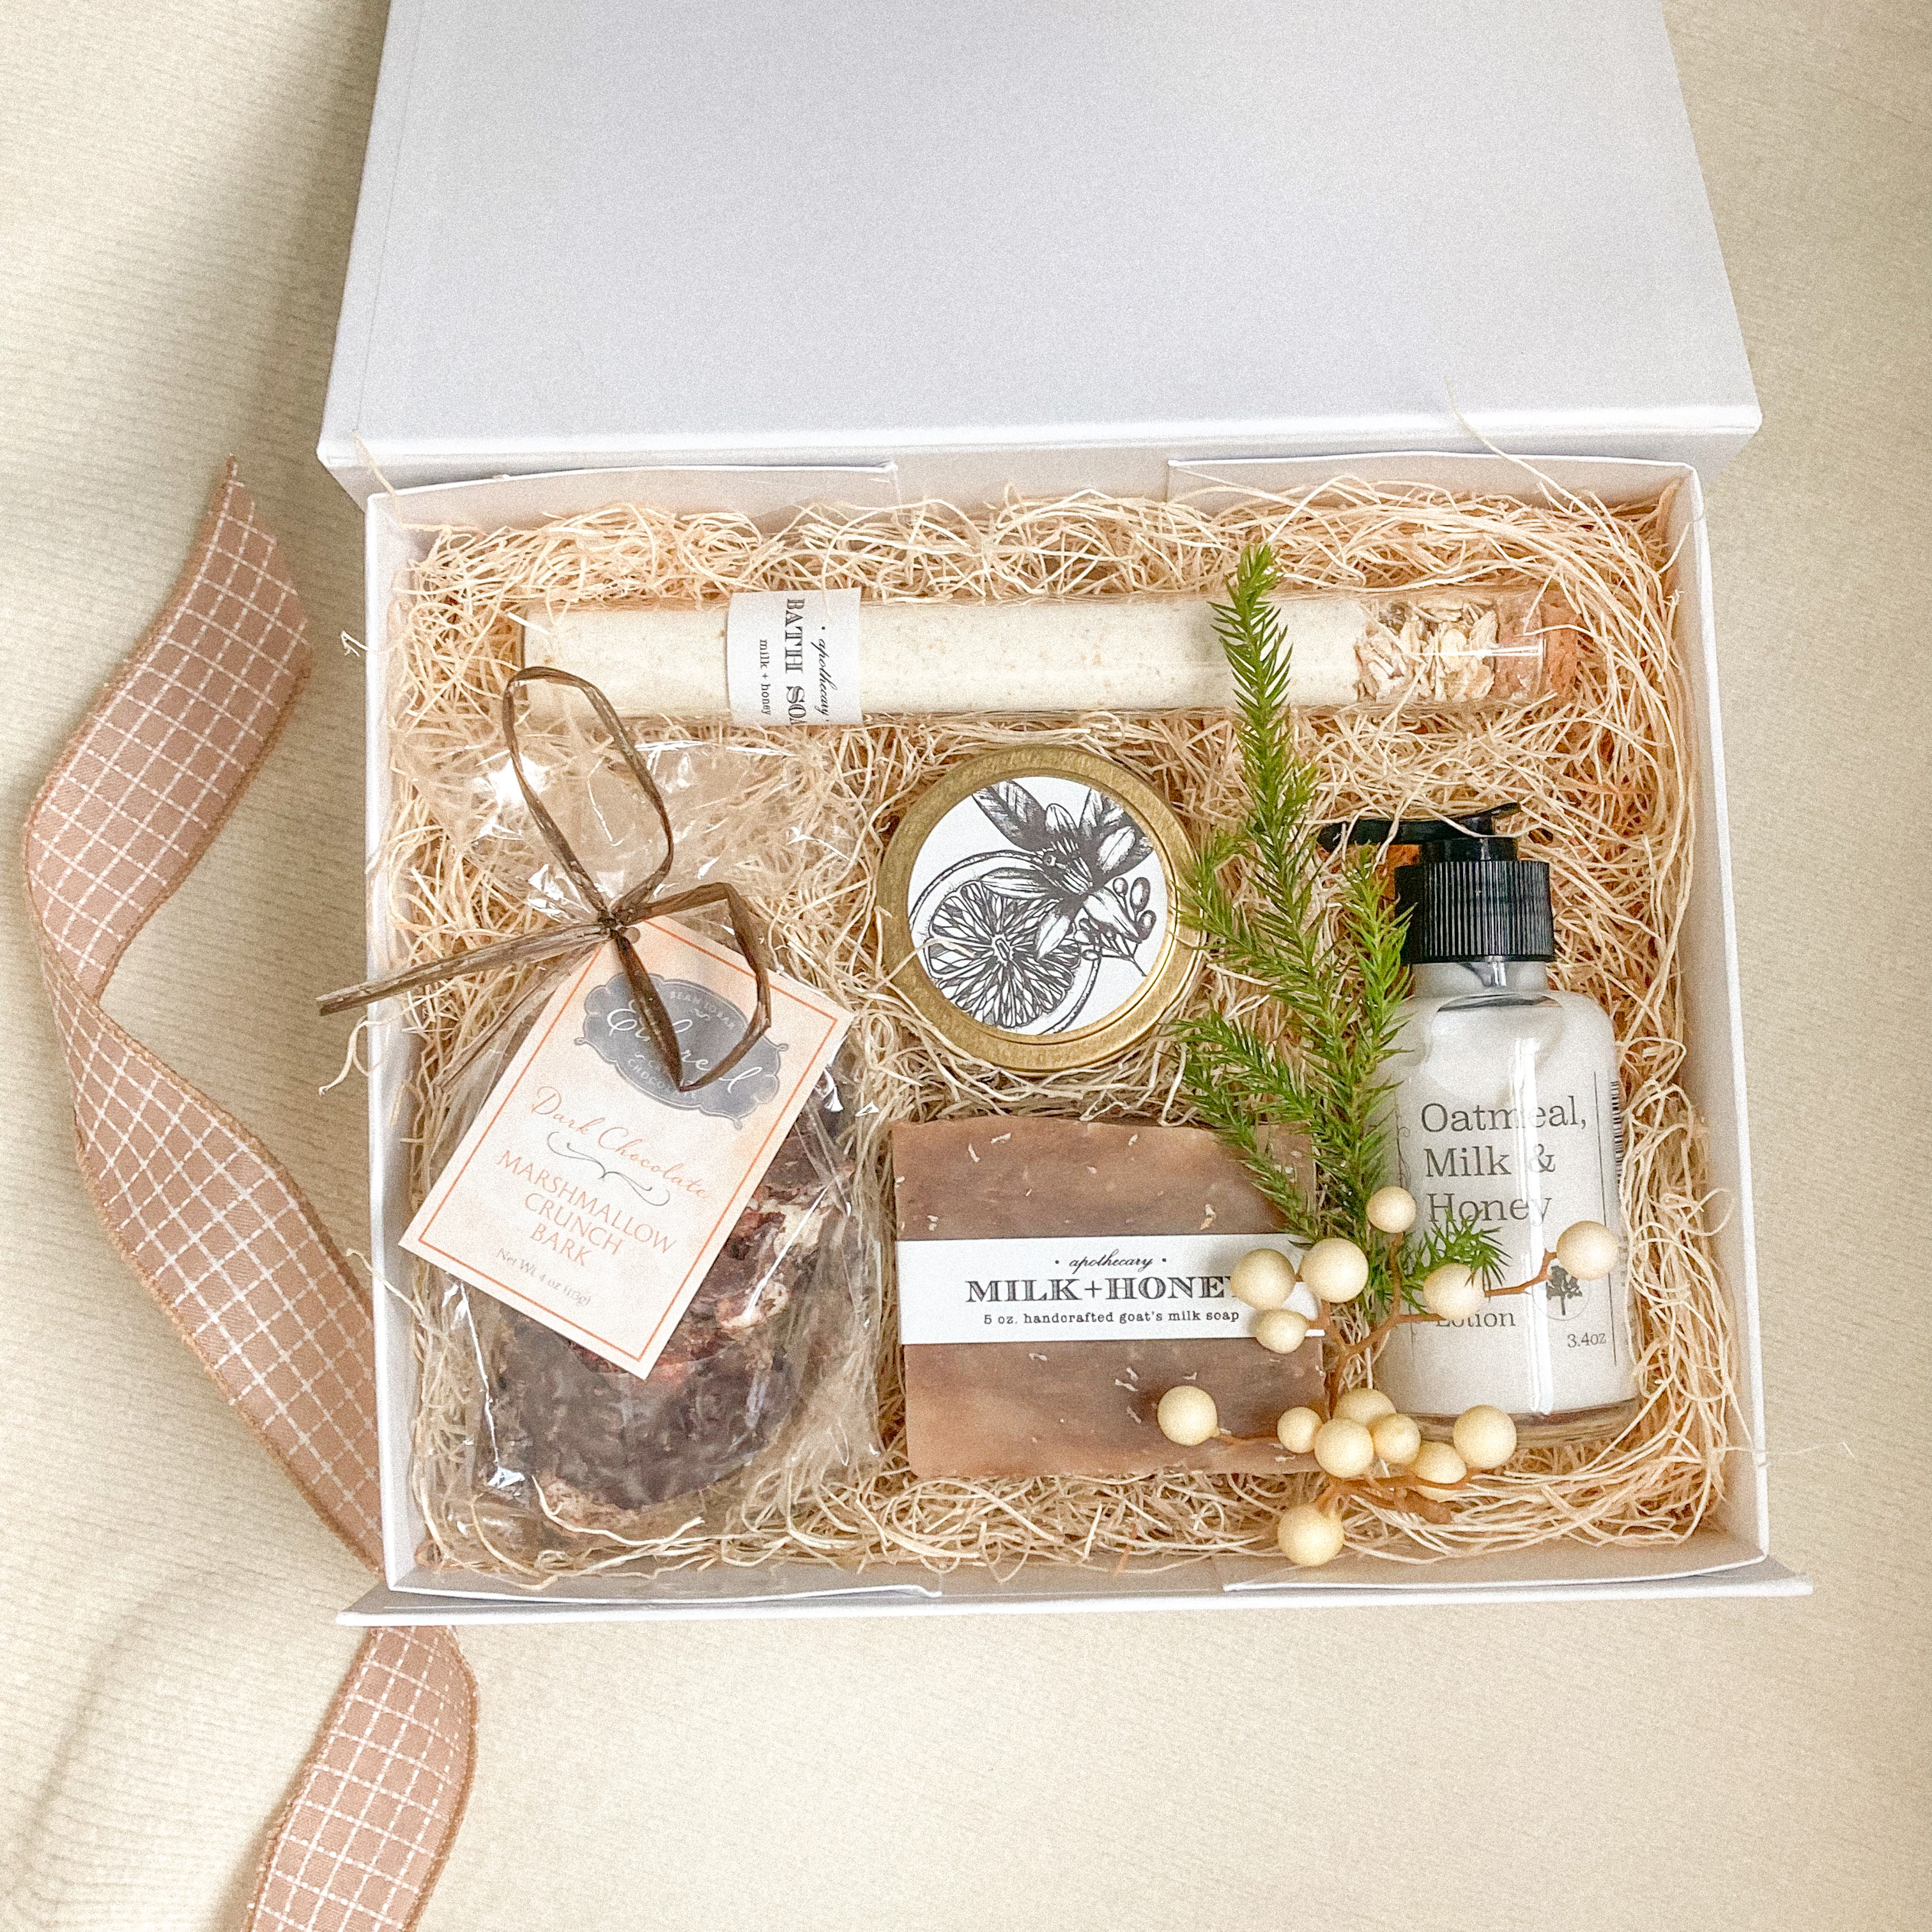 Milk & Honey Spa Gift Box